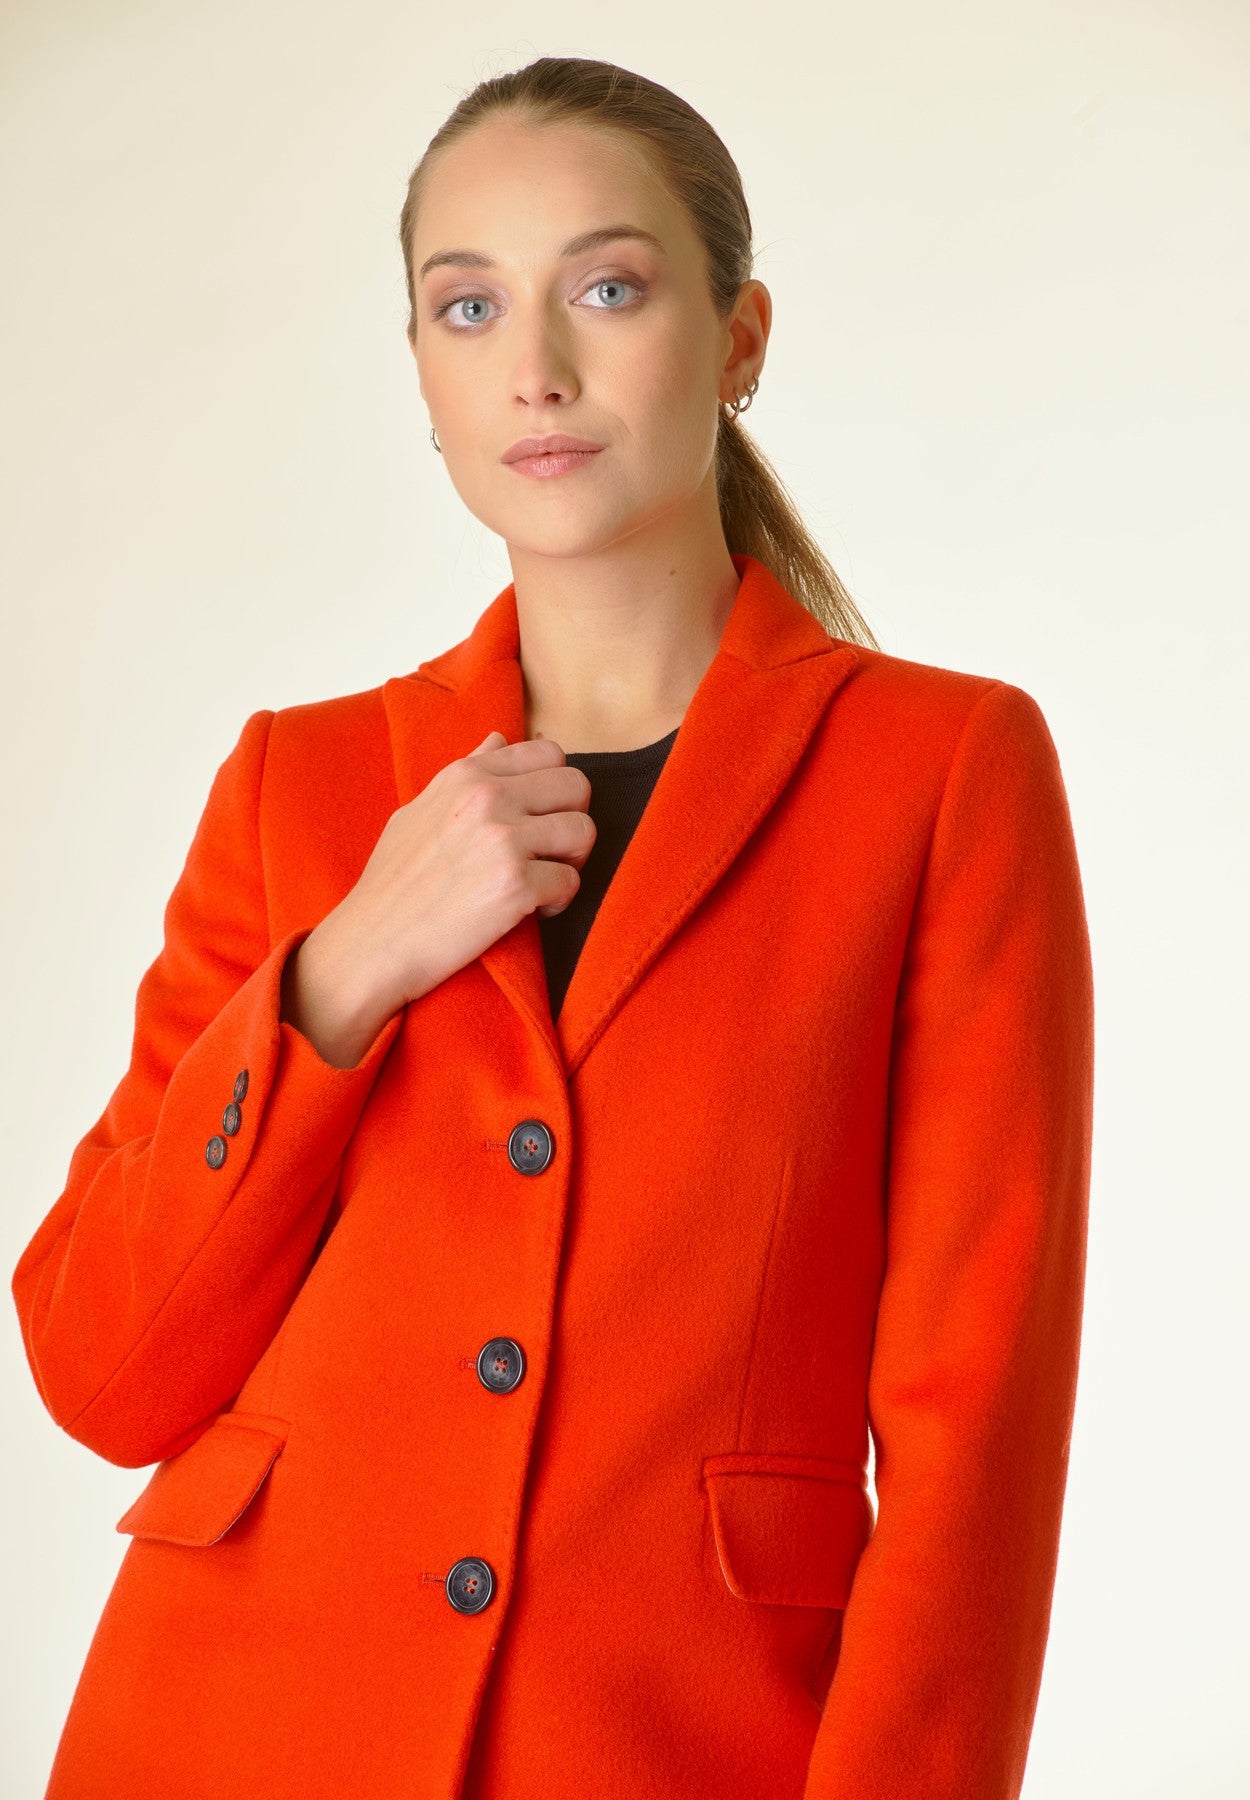 Angelico - Cappotto arancione corto lana cashmere - 2